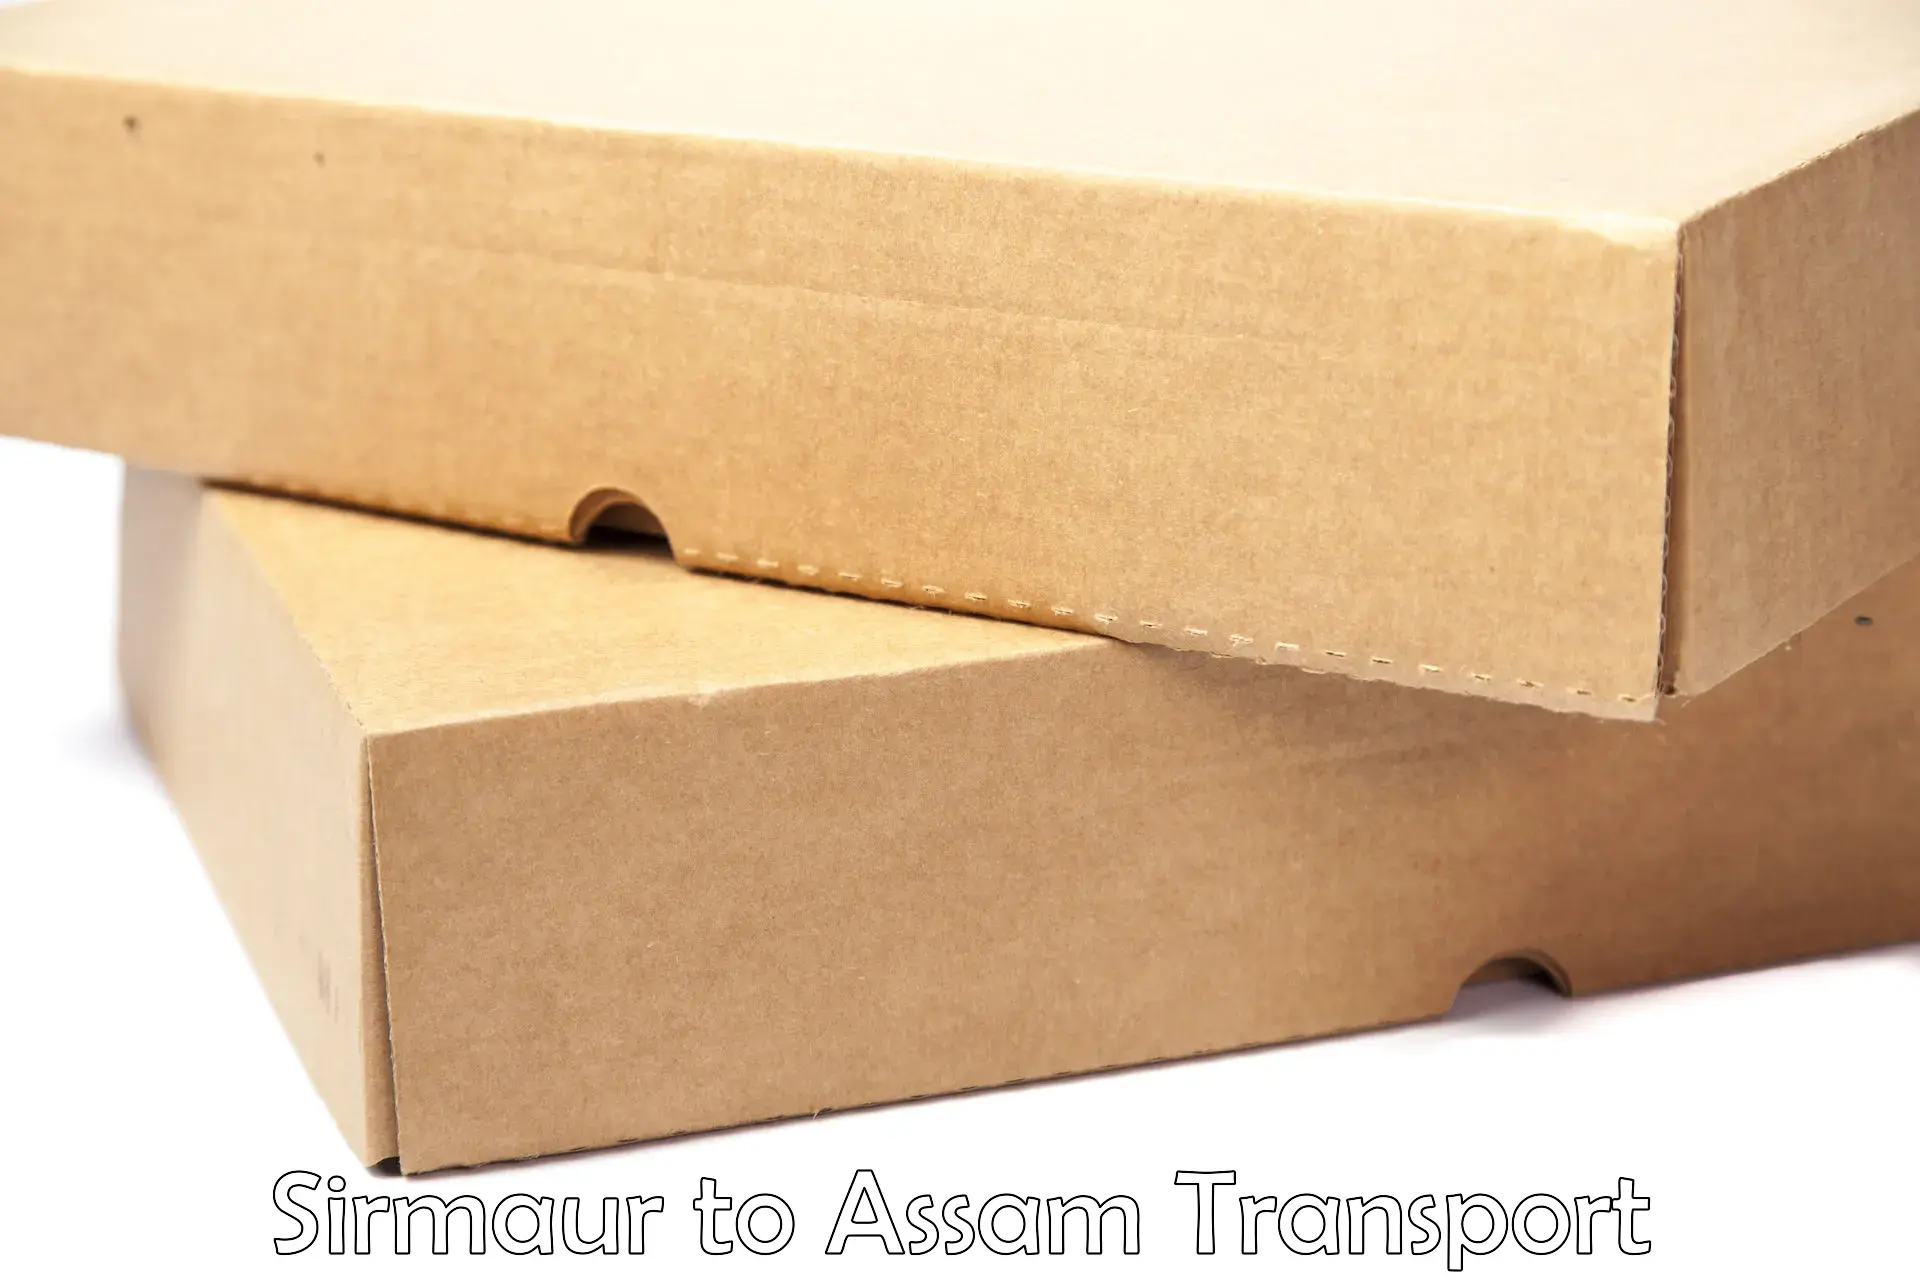 Furniture transport service Sirmaur to Lakhipur